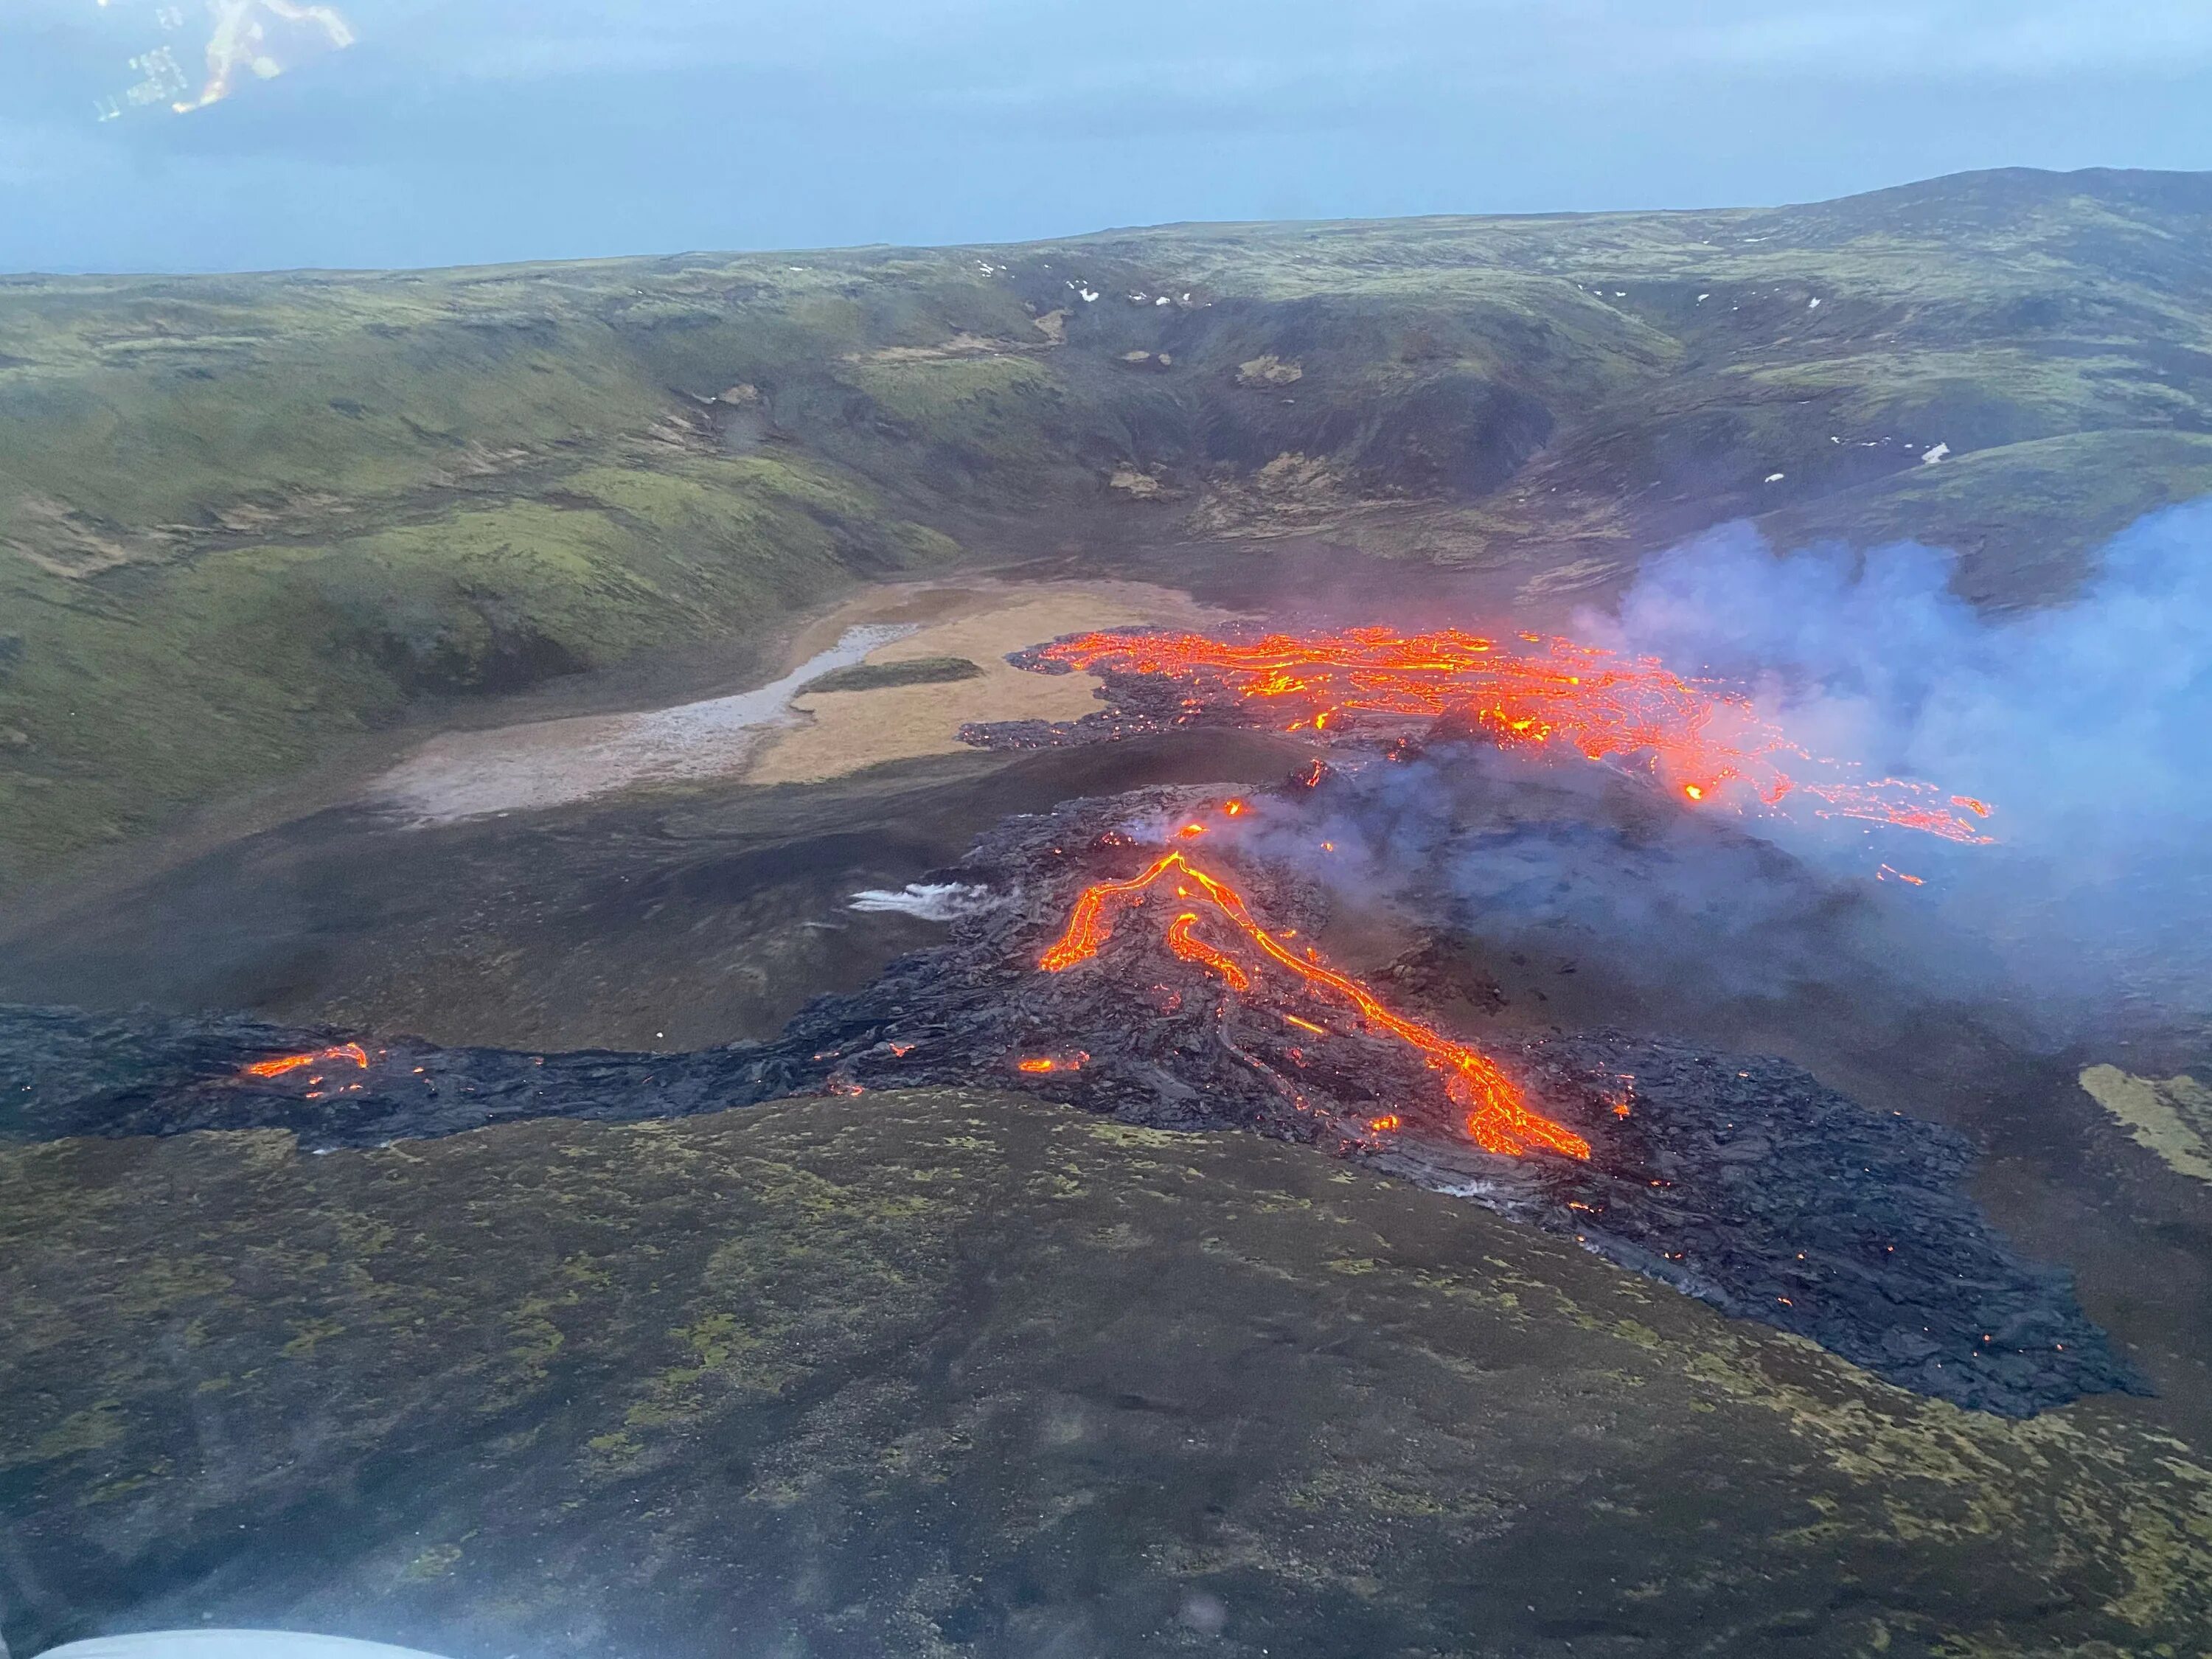 Вулкан начал извергаться. Извержение вулкана в Исландии 2021. Извержение вулкана в Исландии Эйяфьятлайокудль. Вулкан Исландии Эйяфьятлайокудль 2010. Вулкан Эйяфьятлайокудль извержение 2010.